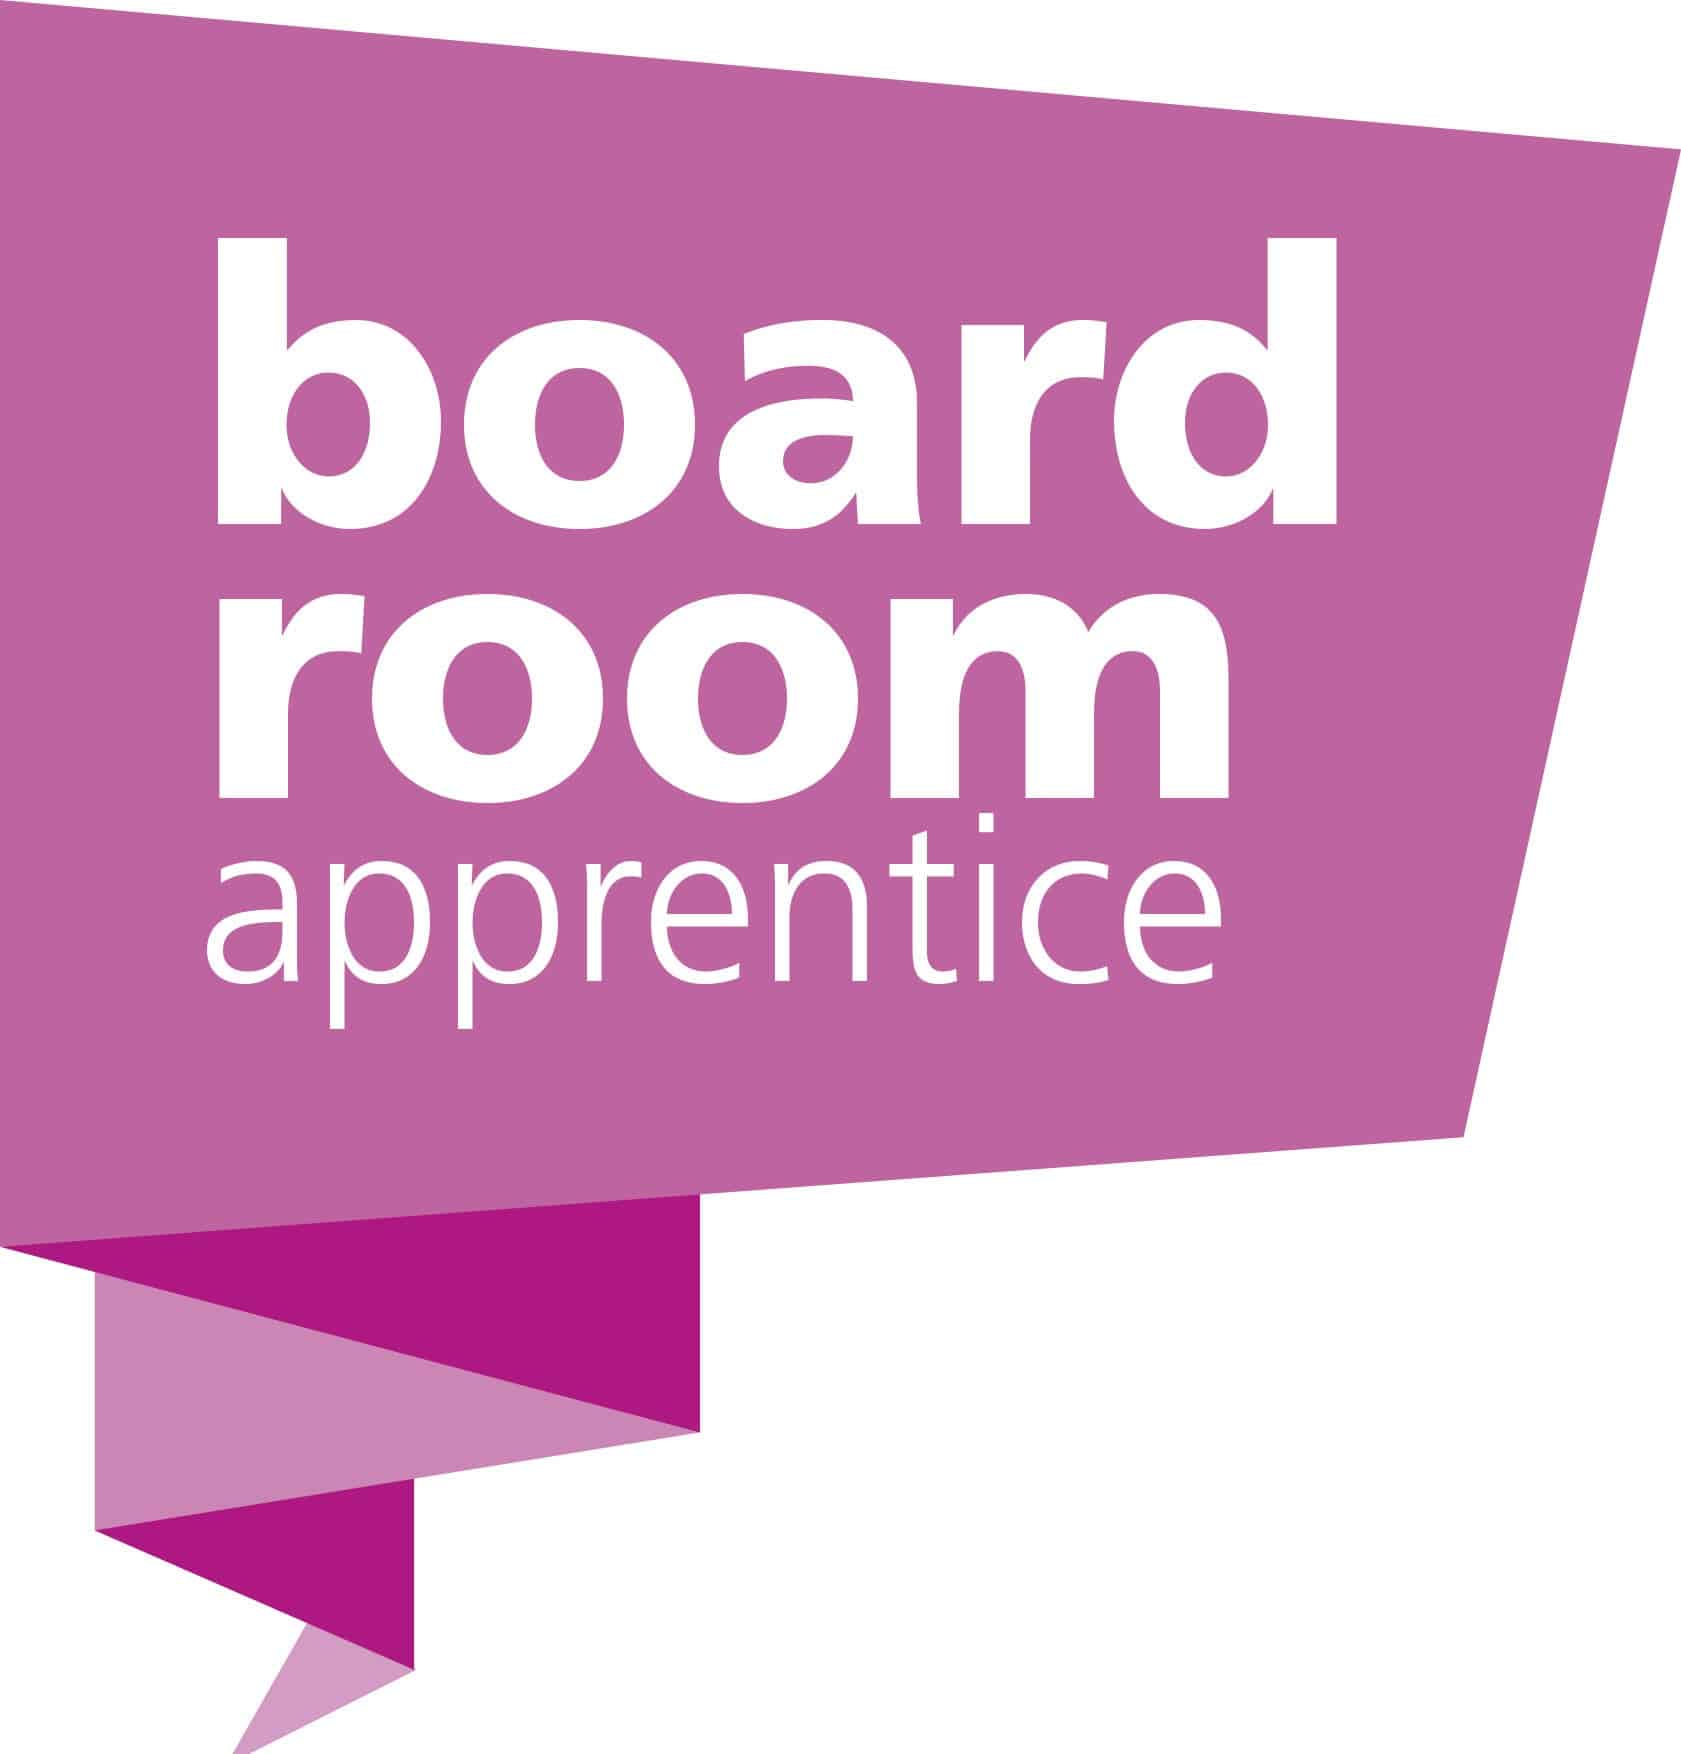 boardroom apprentice logo